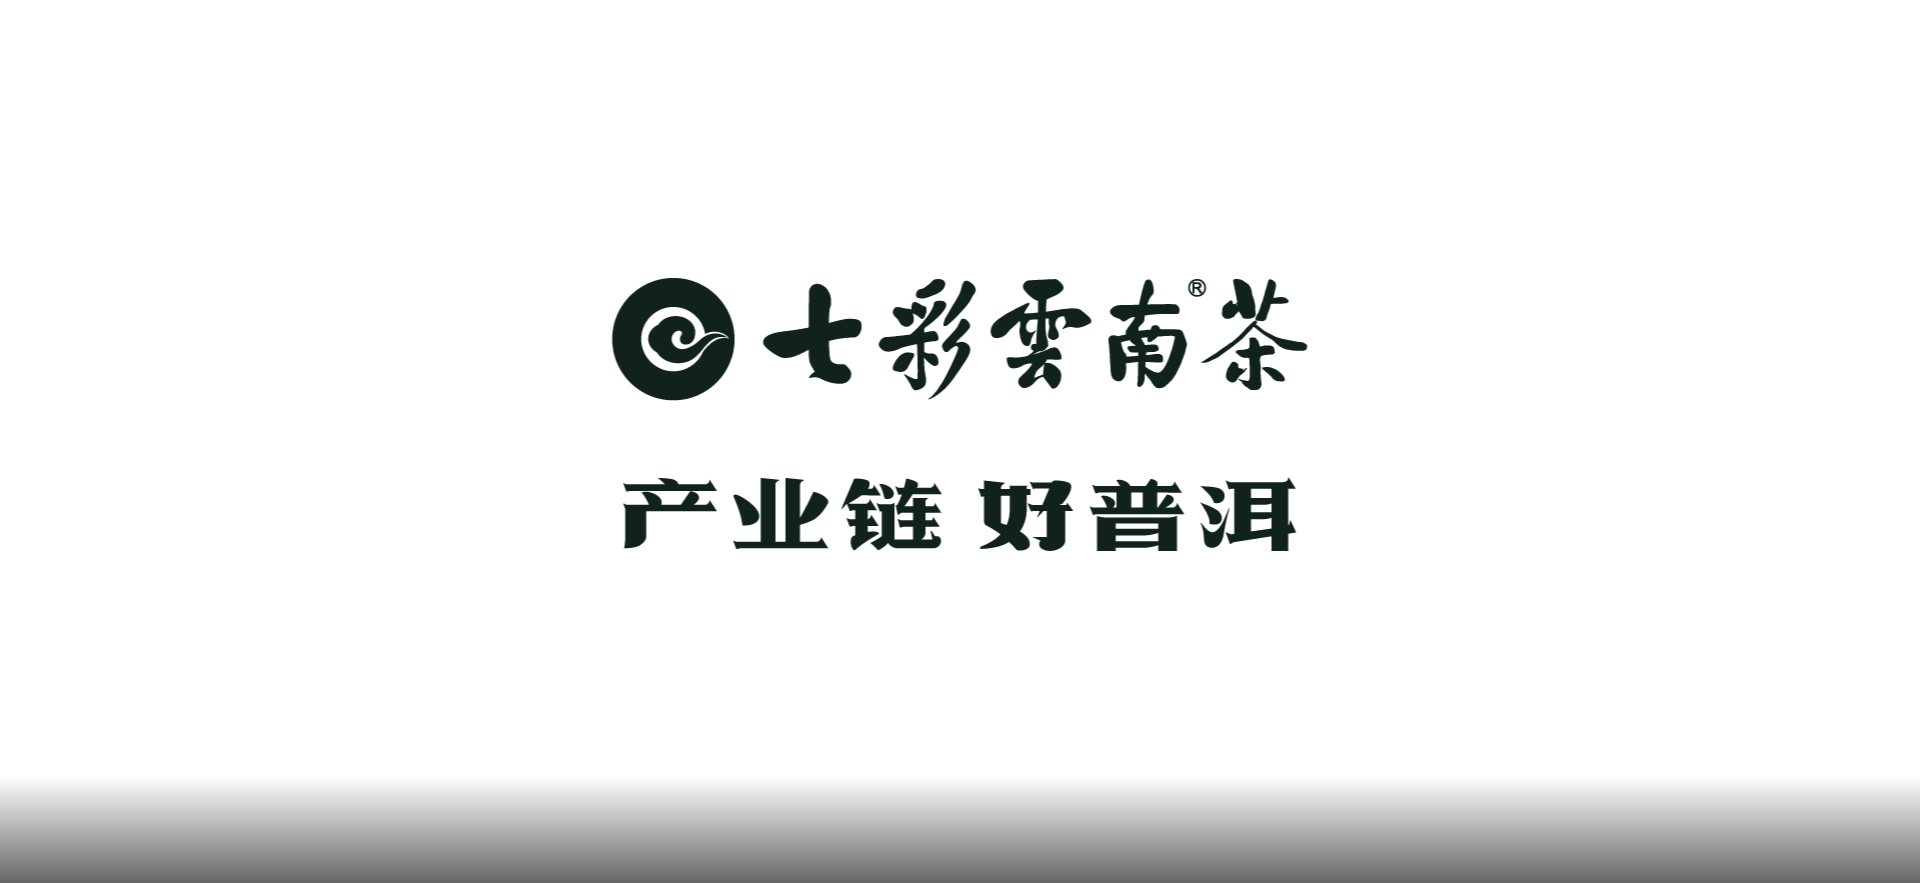 七彩云南®茶——品牌长画卷背后的创作故事（五）